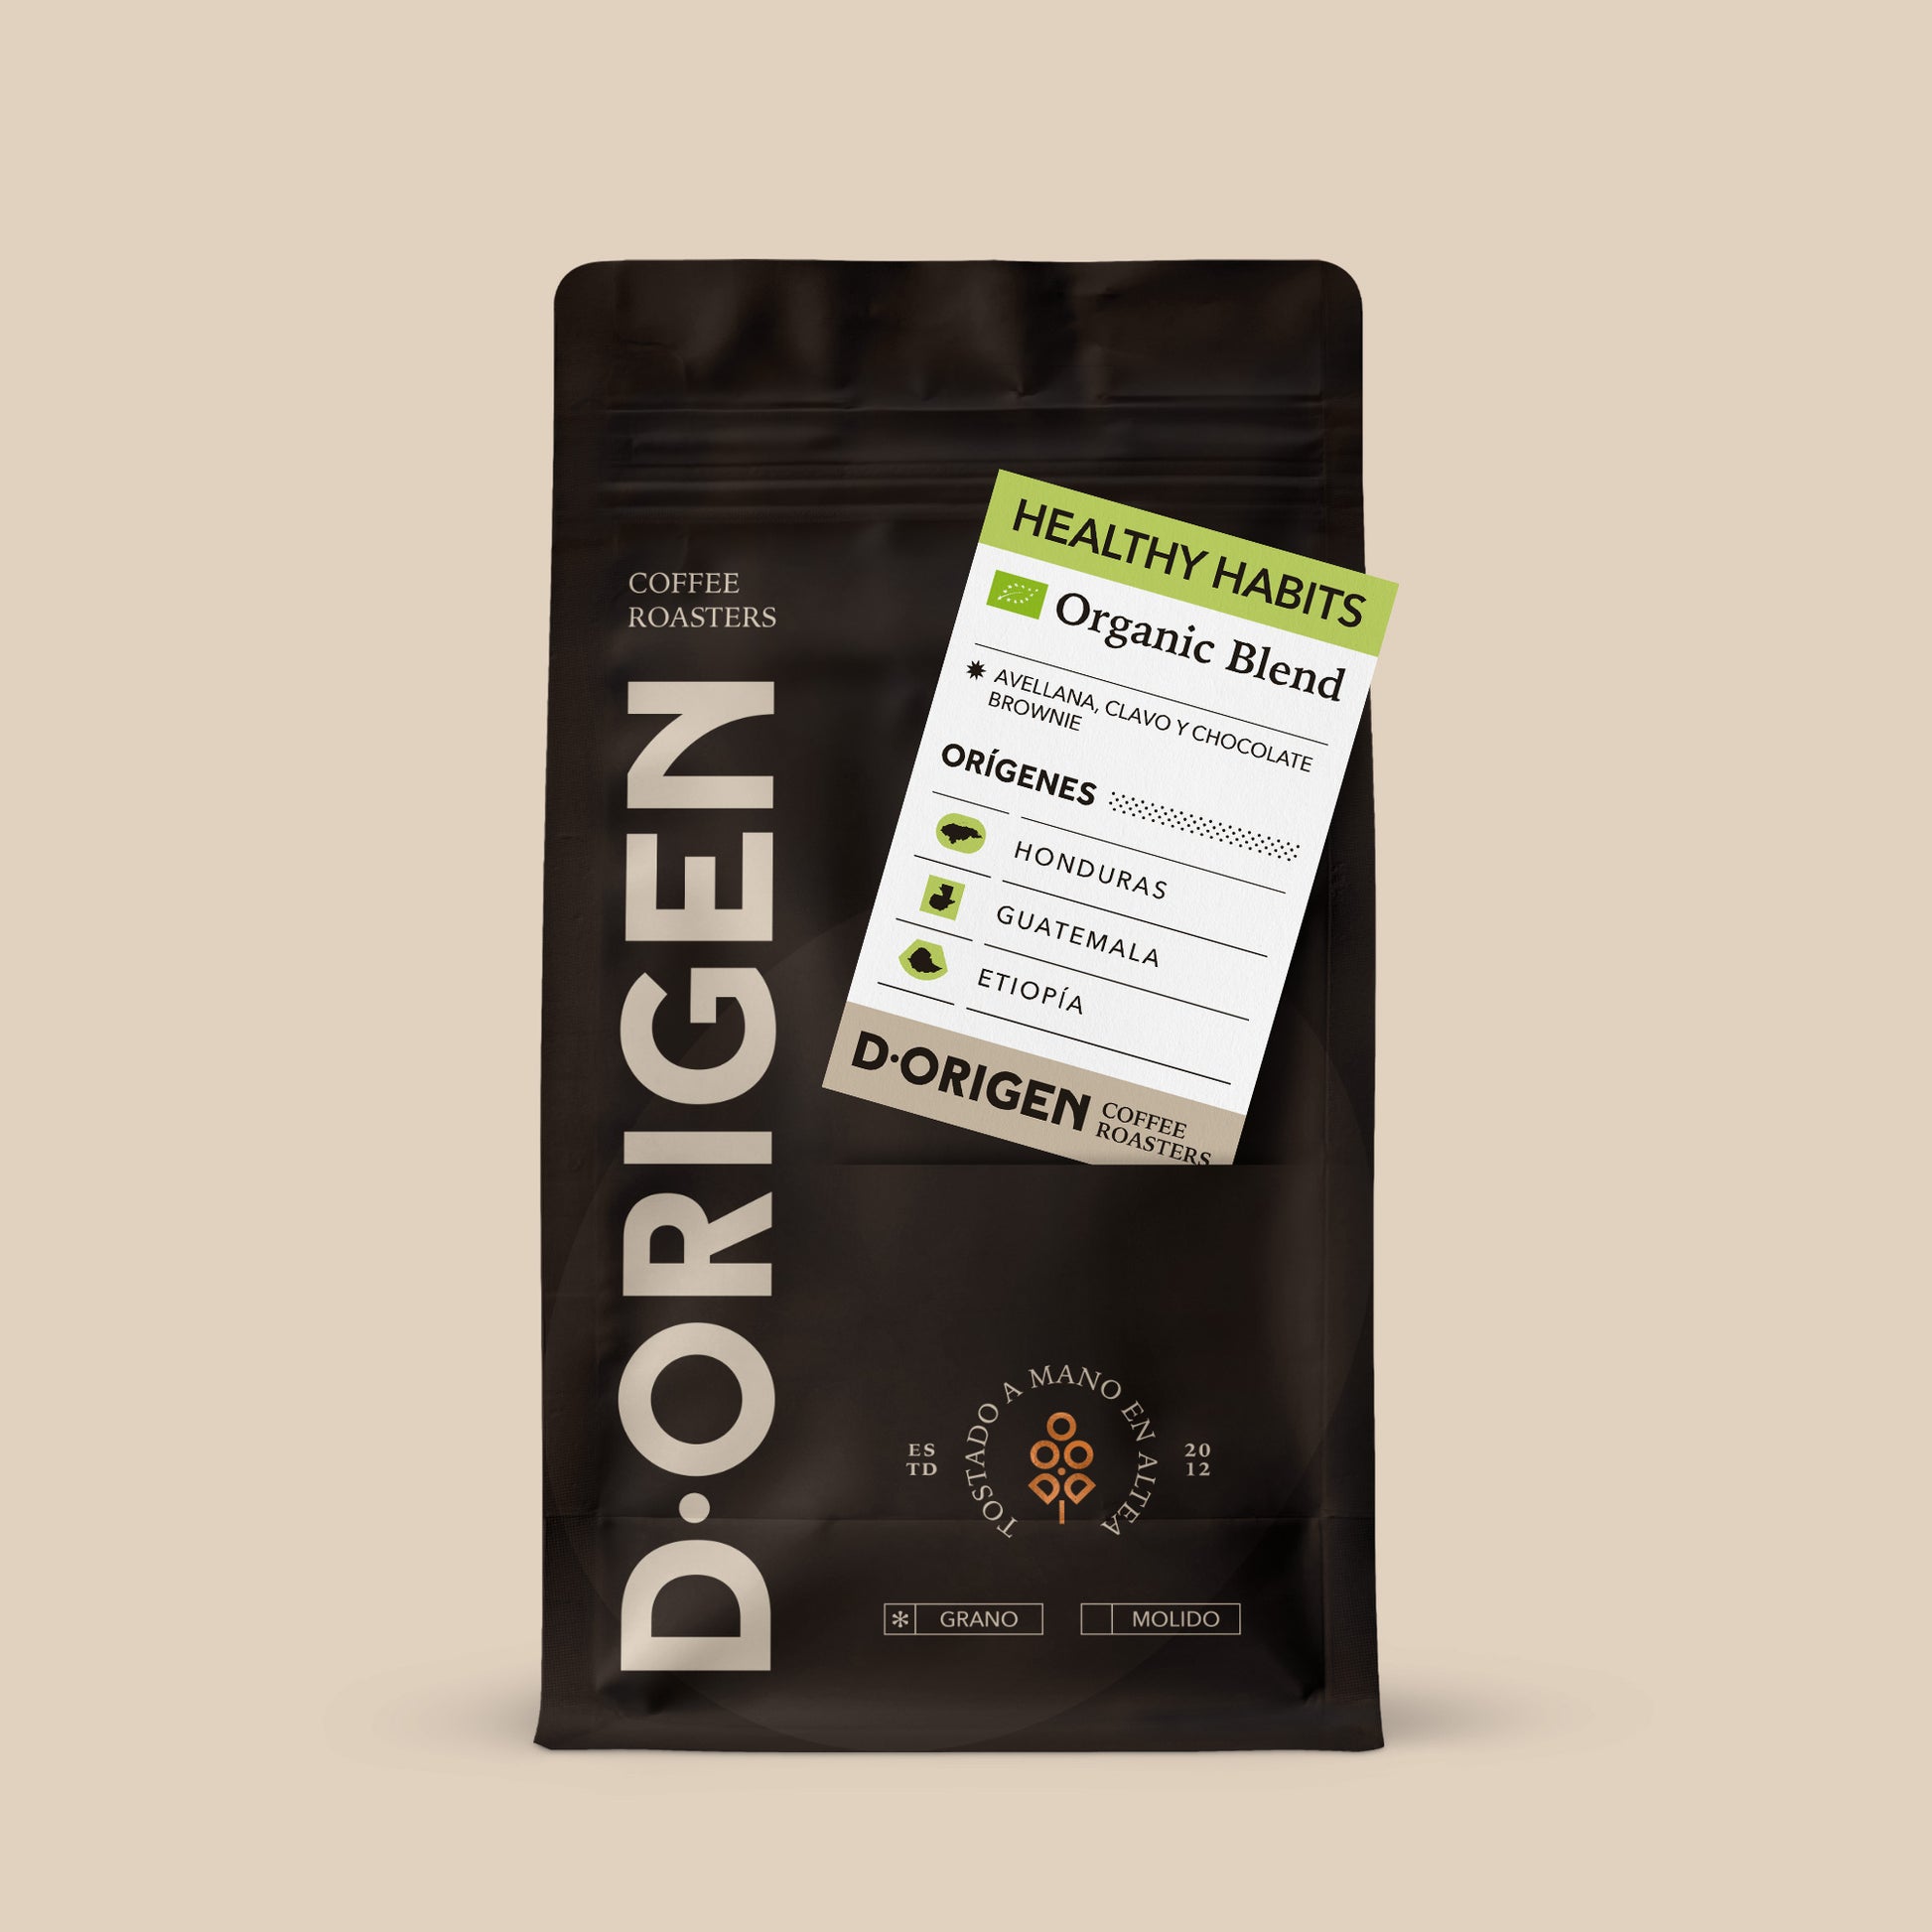 HEALTHY HABITS - D·Origen Coffee Roasters